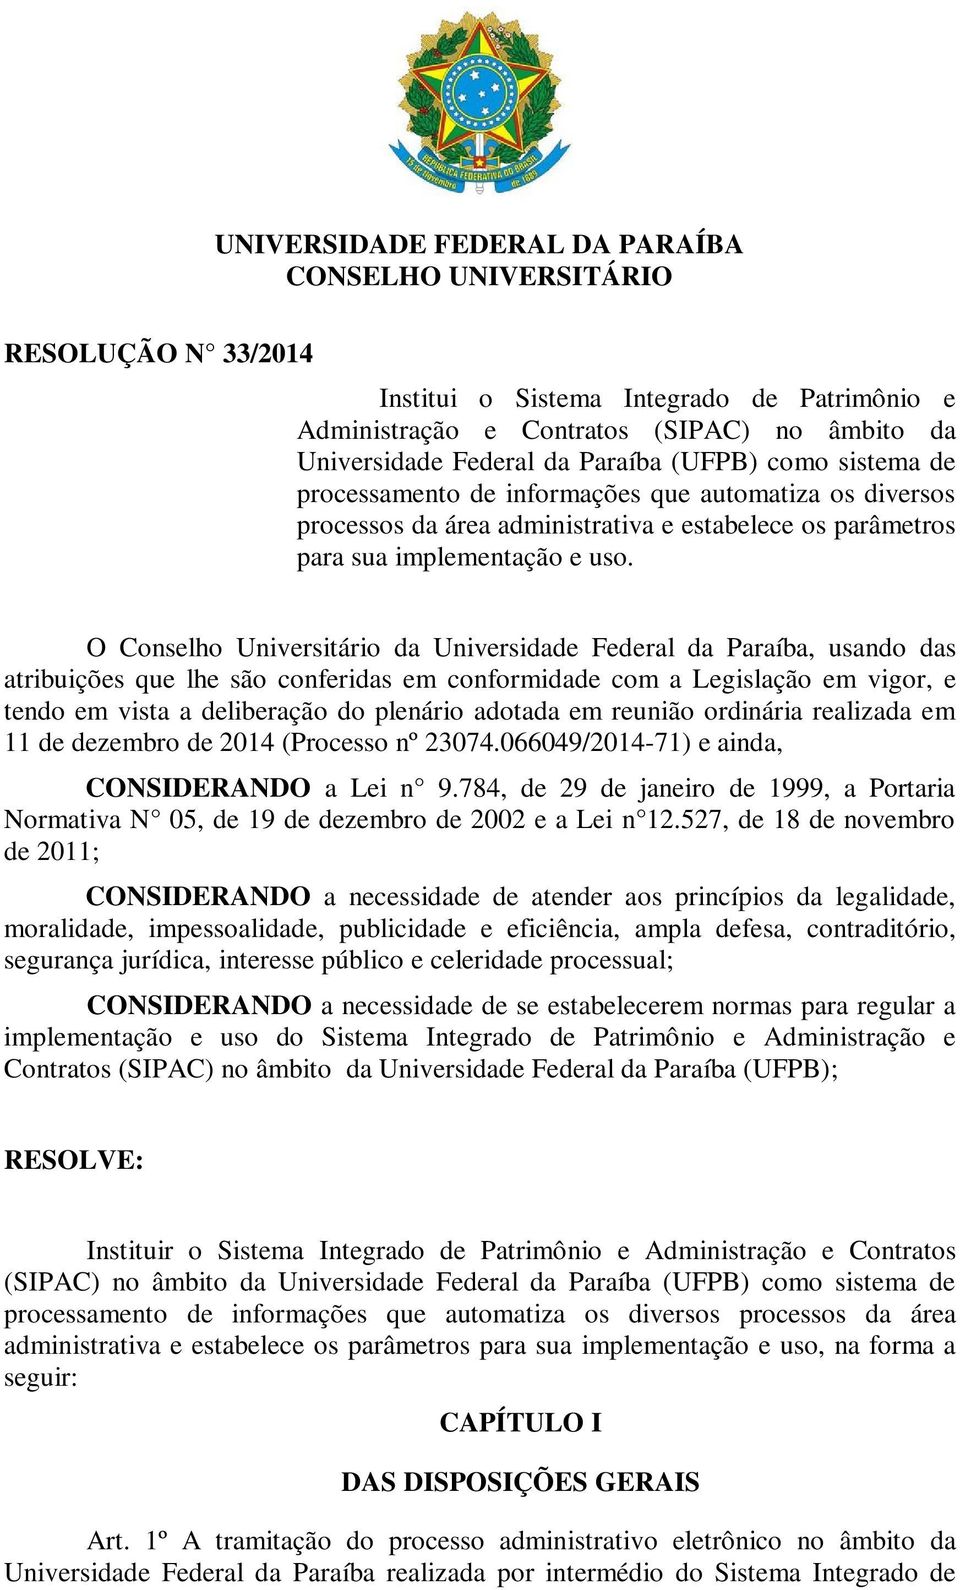 O Conselho Universitário da Universidade Federal da Paraíba, usando das atribuições que lhe são conferidas em conformidade com a Legislação em vigor, e tendo em vista a deliberação do plenário